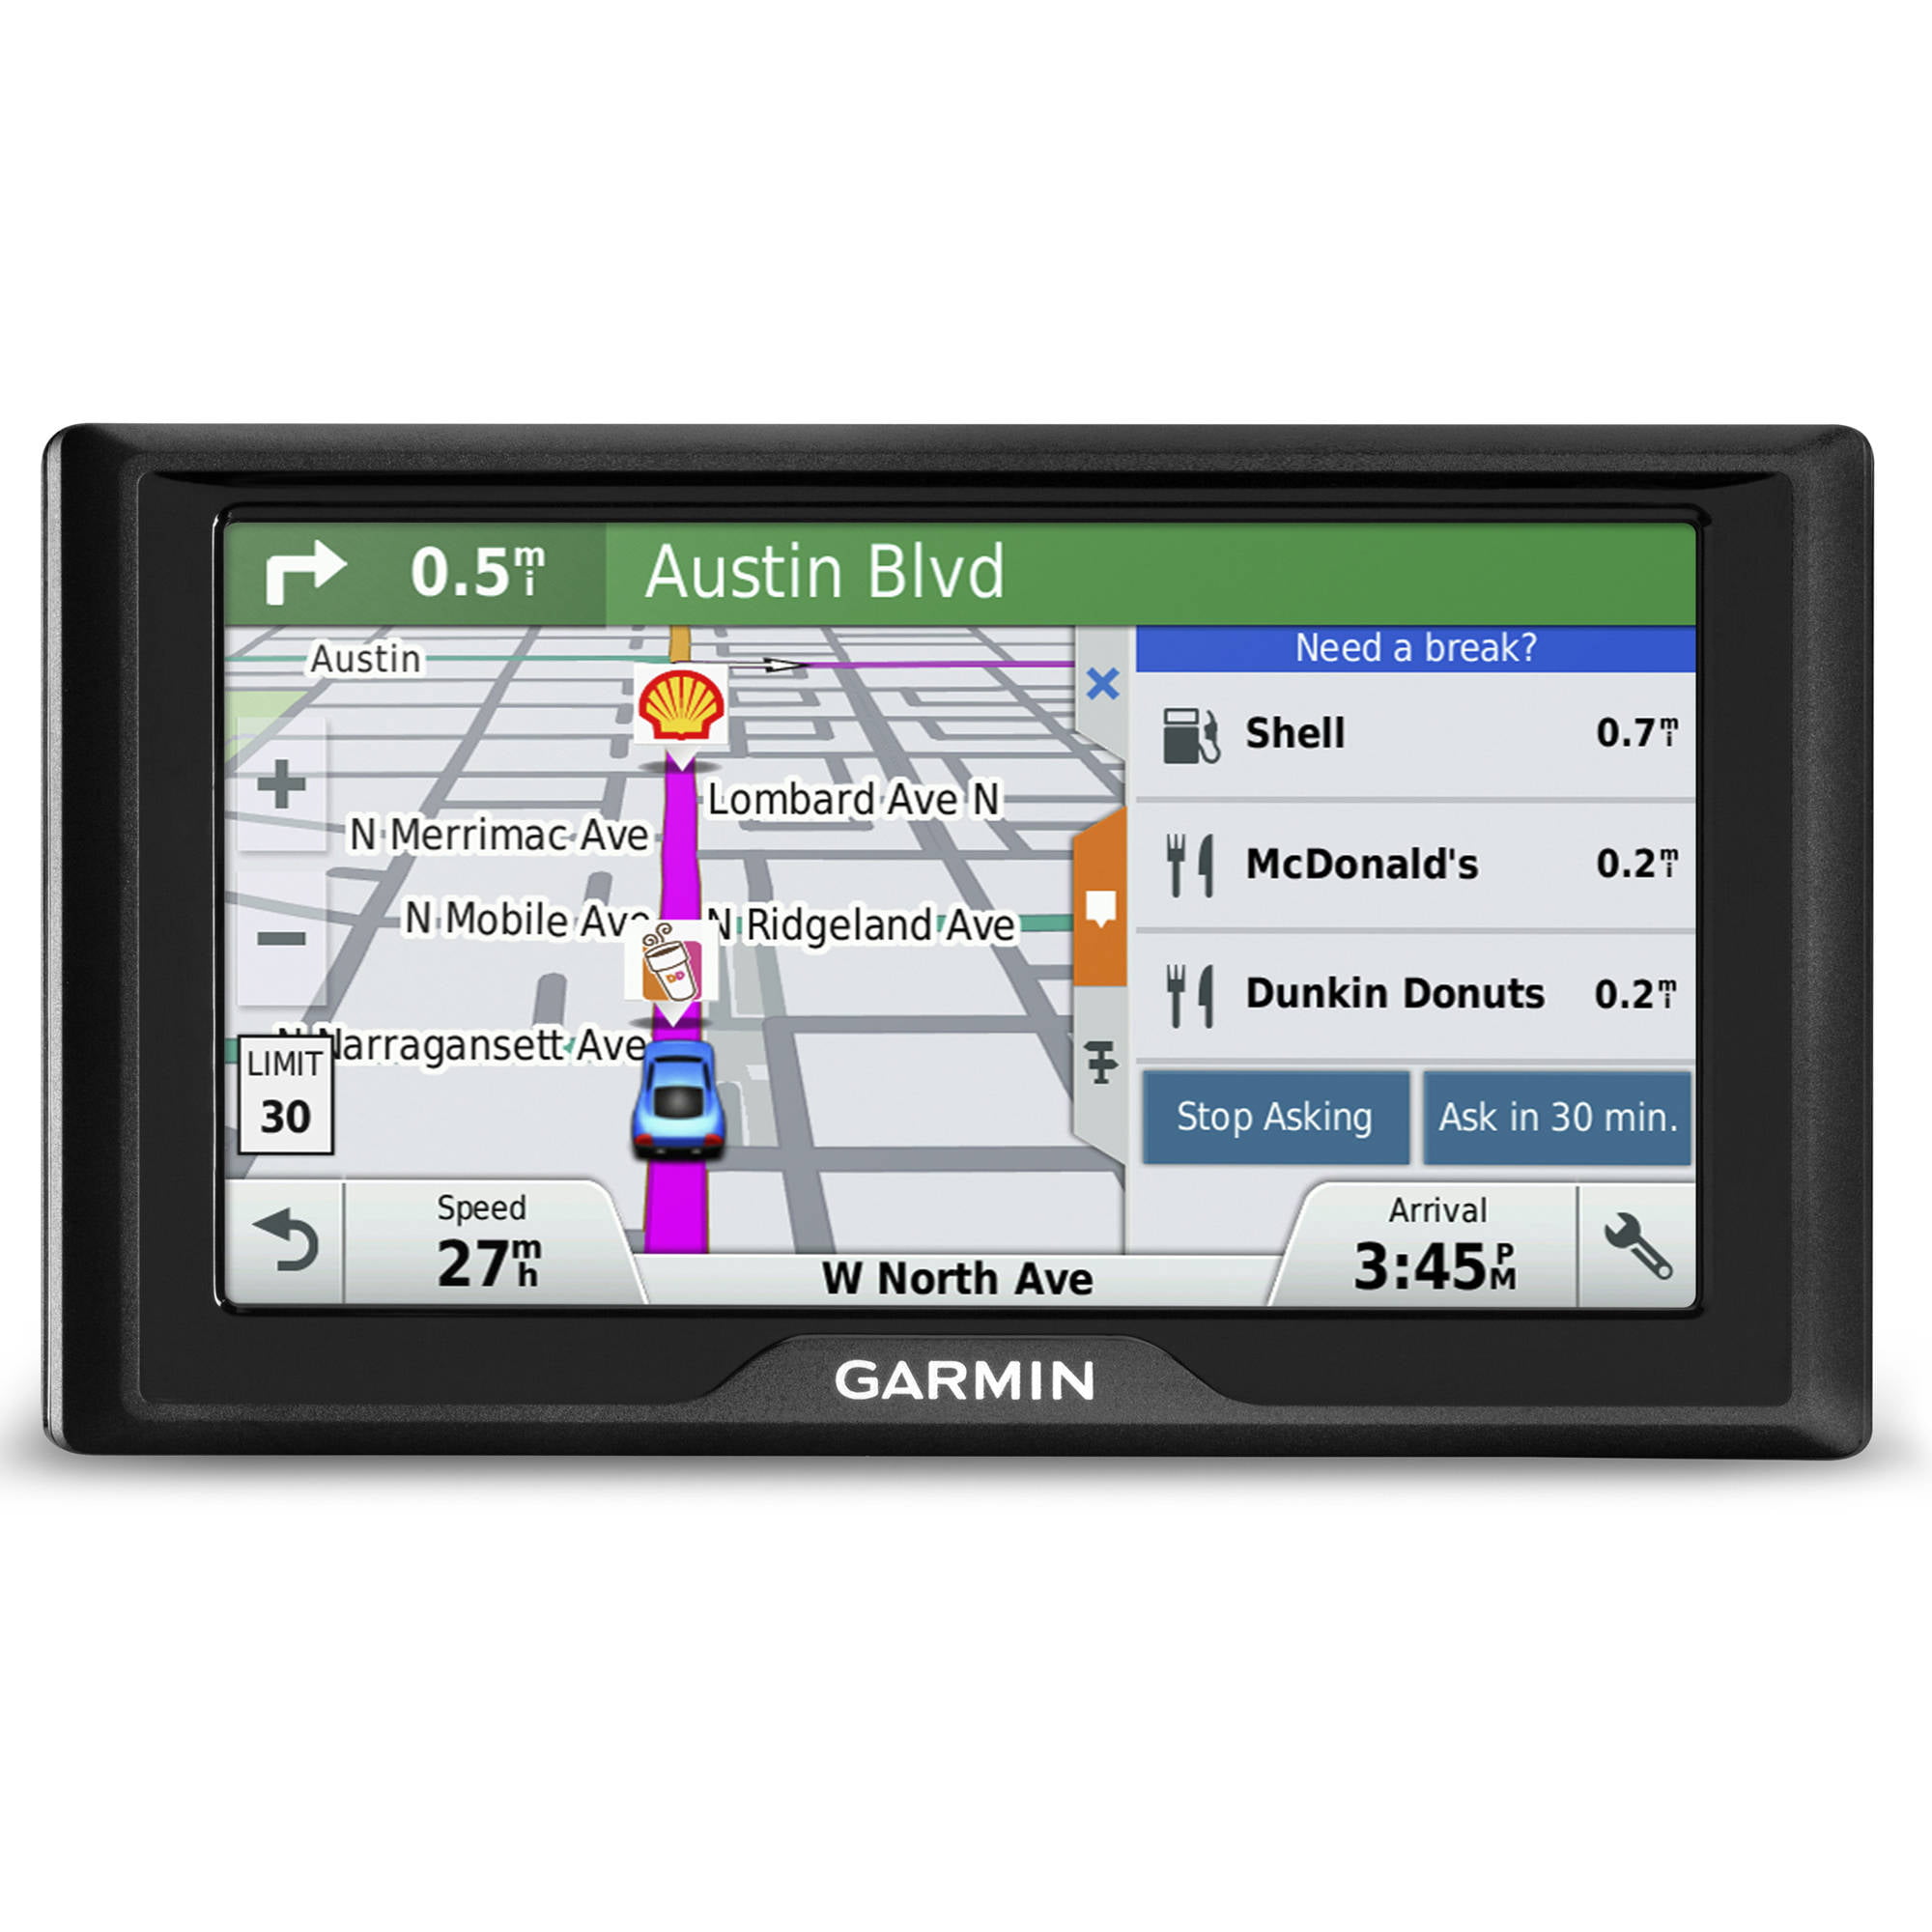 Drive USA LM GPS Navigator - Walmart.com